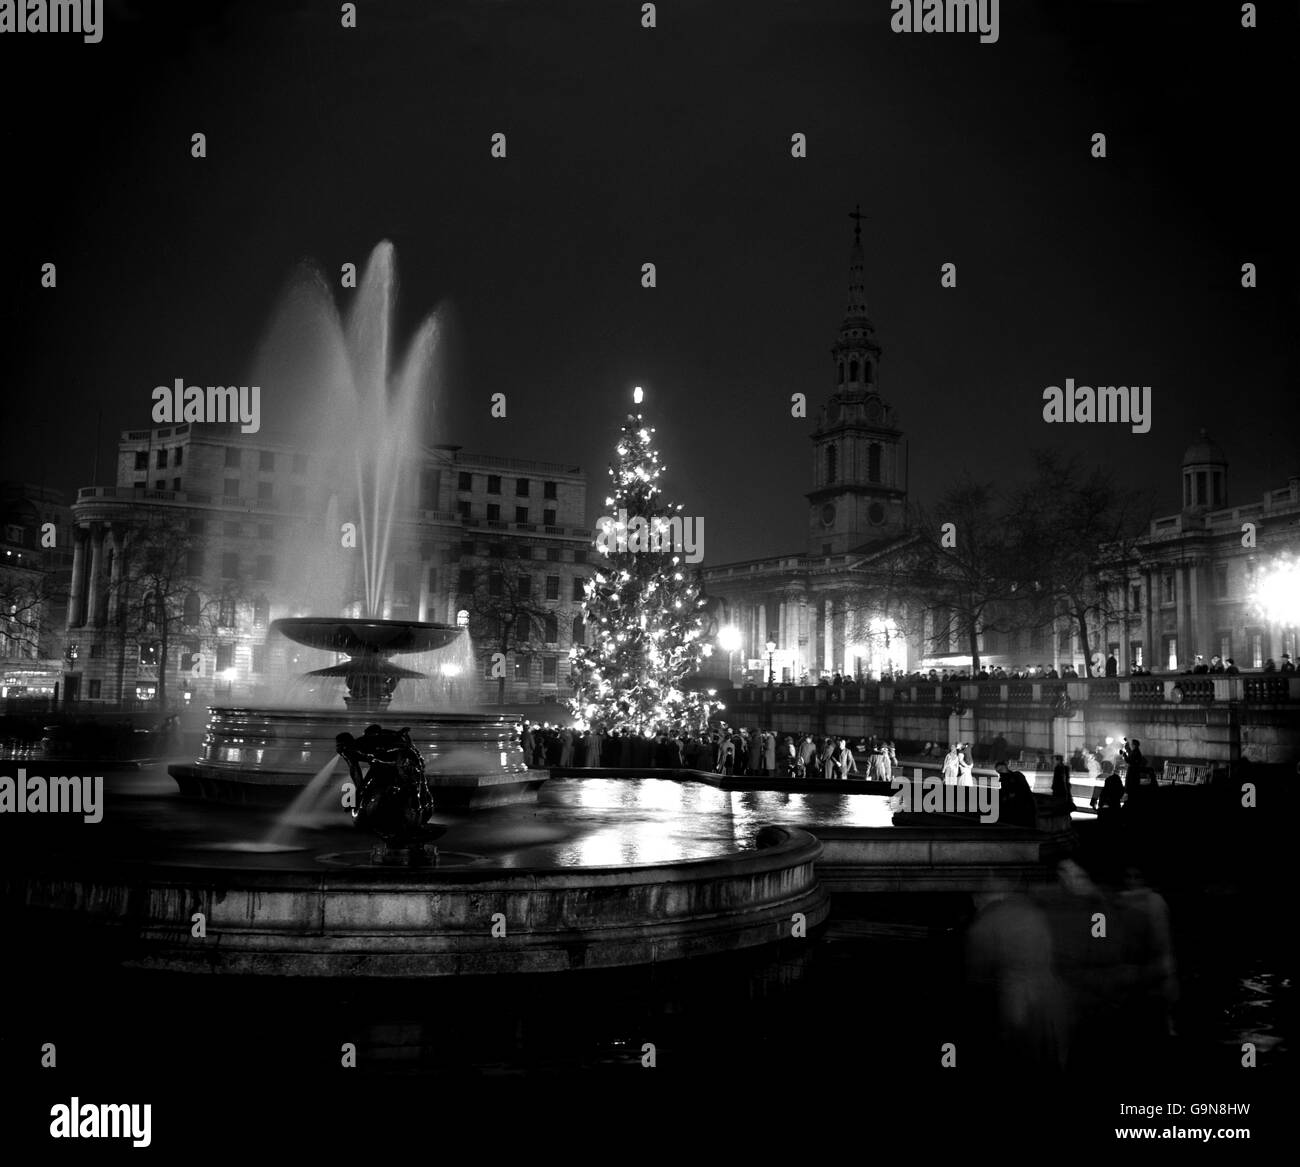 La scène de Trafalgar Square, alors que l'arbre de Noël de Londres scintille avec la lumière après la mise en marche de ses illuminations. L'arbre, un sapin géant présenté au peuple de Londres par le peuple d'Oslo, en Norvège, est le septième arbre à venir aux Londoniens de Norvège comme cadeau annuel. Banque D'Images